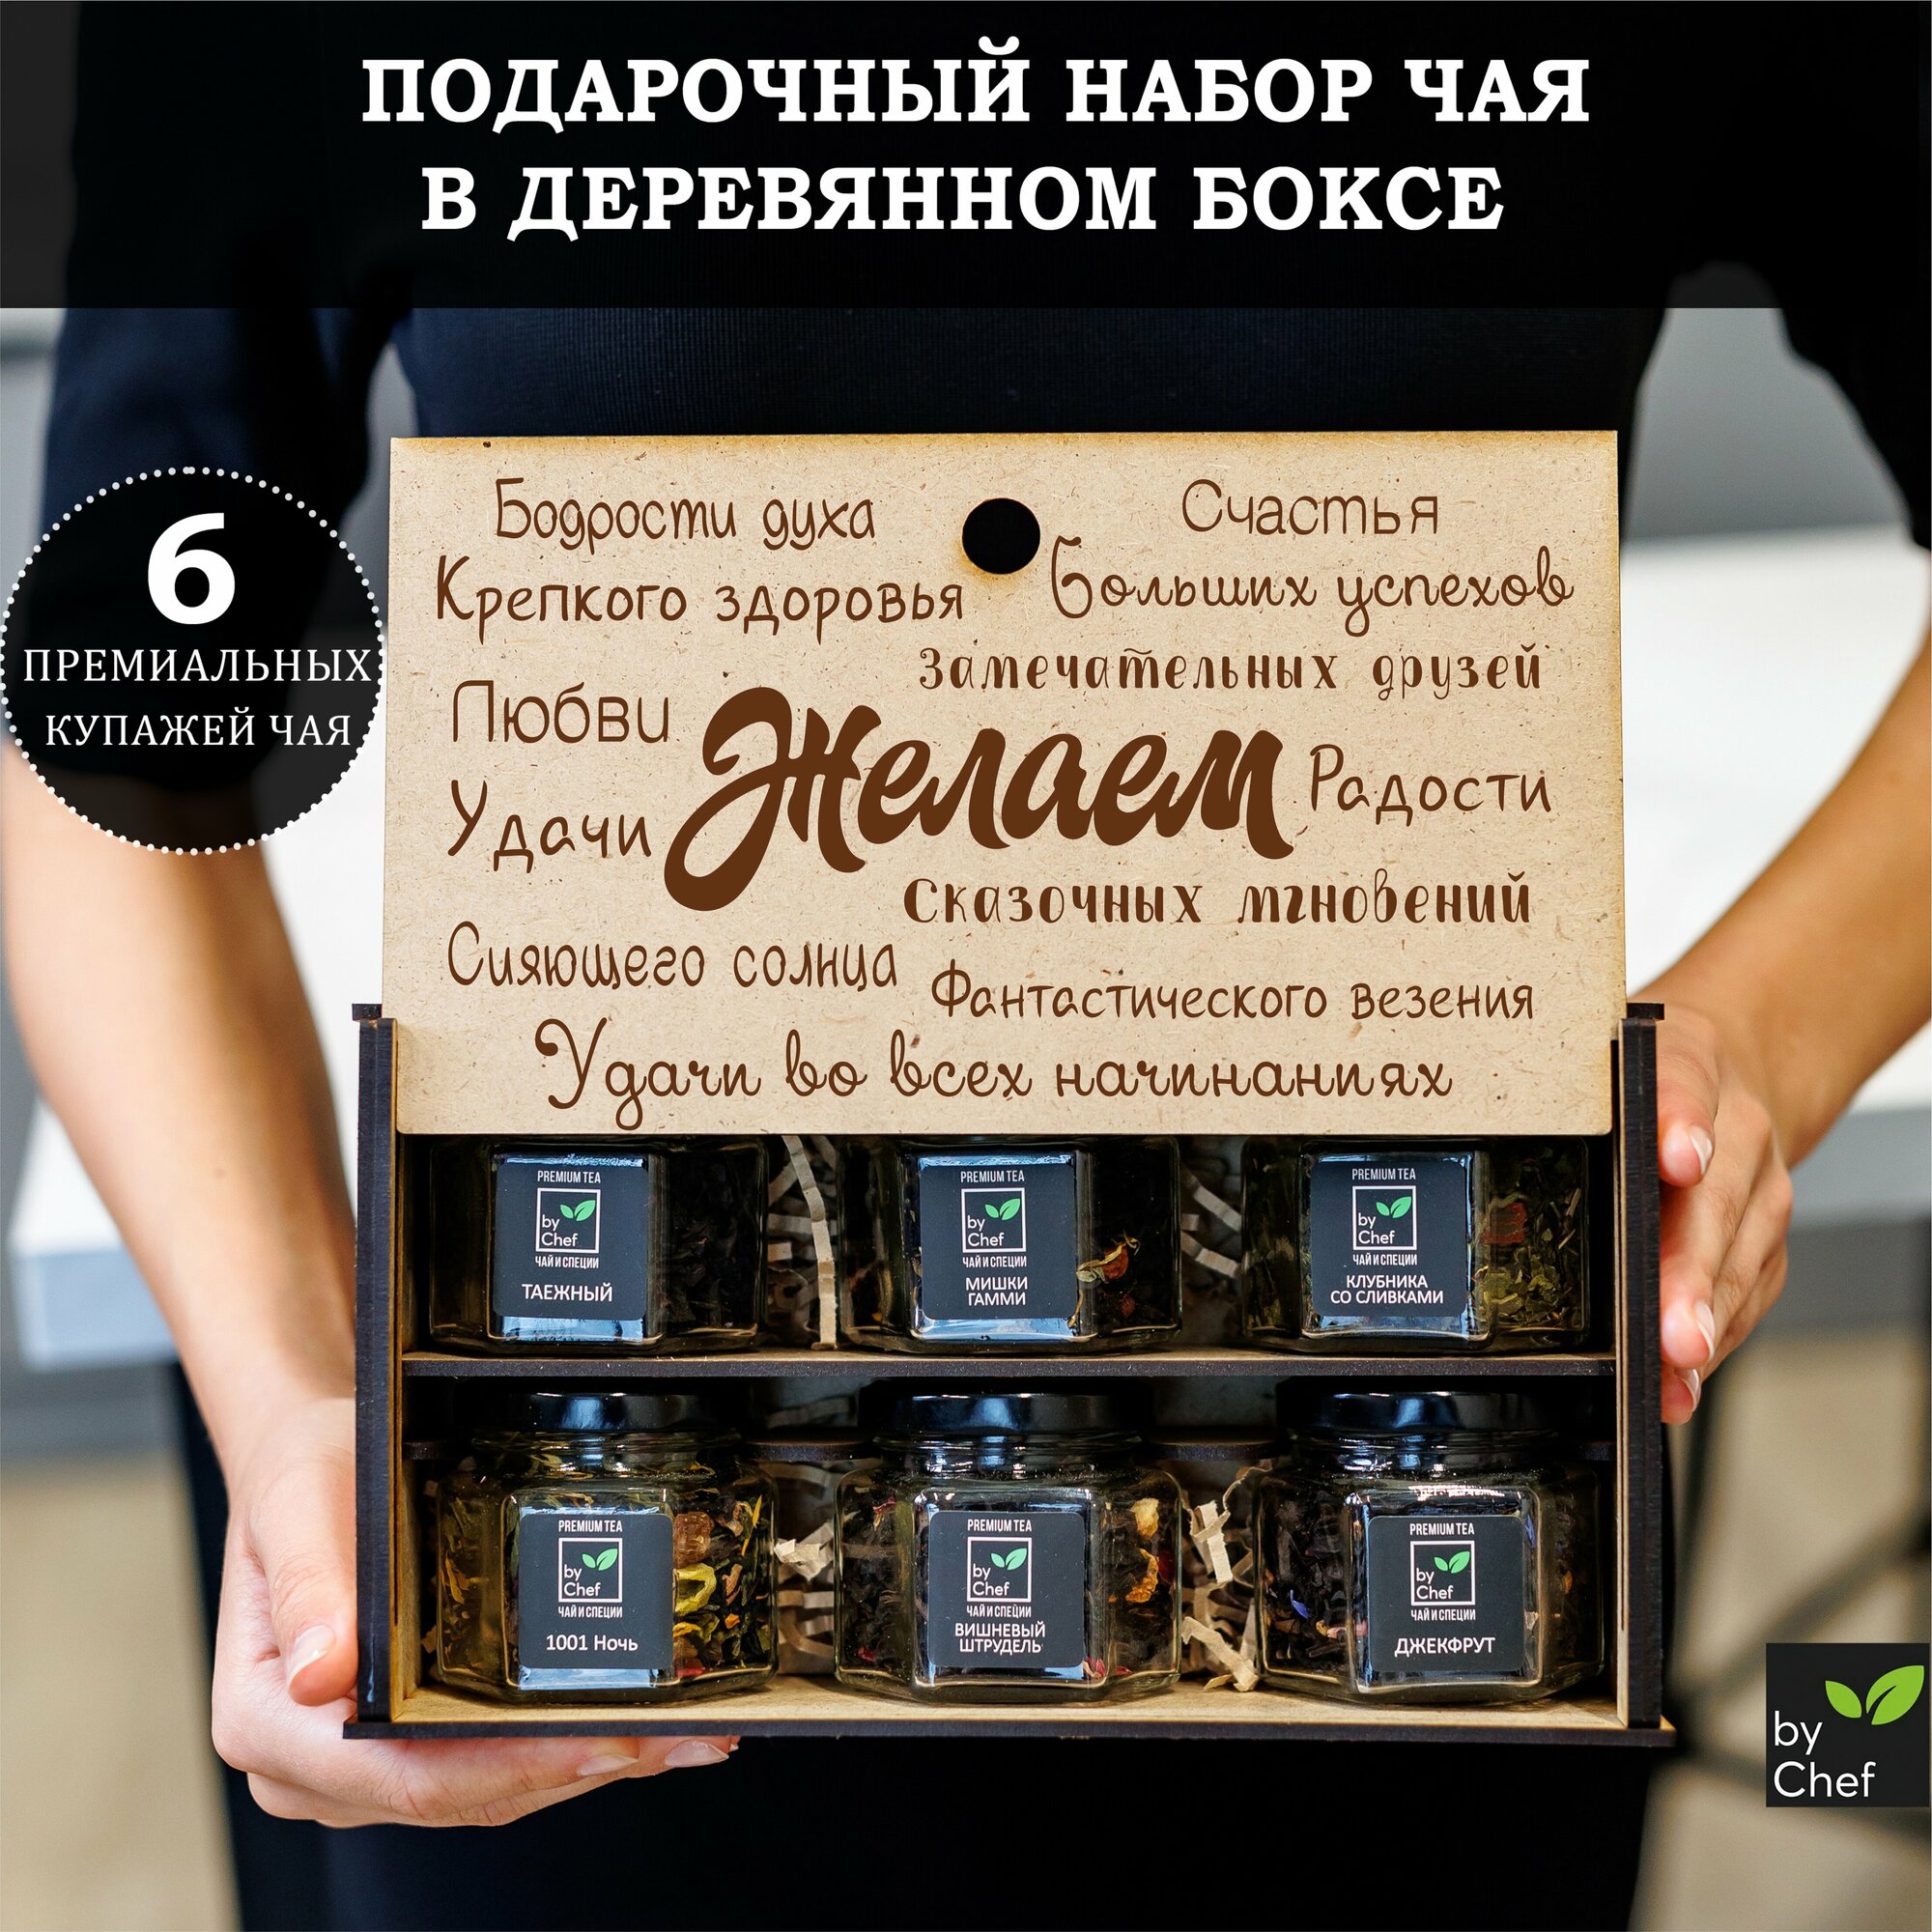 Подарочный набор листового чая 6 вкусов, подарок женщине, мужчине, маме, подруге